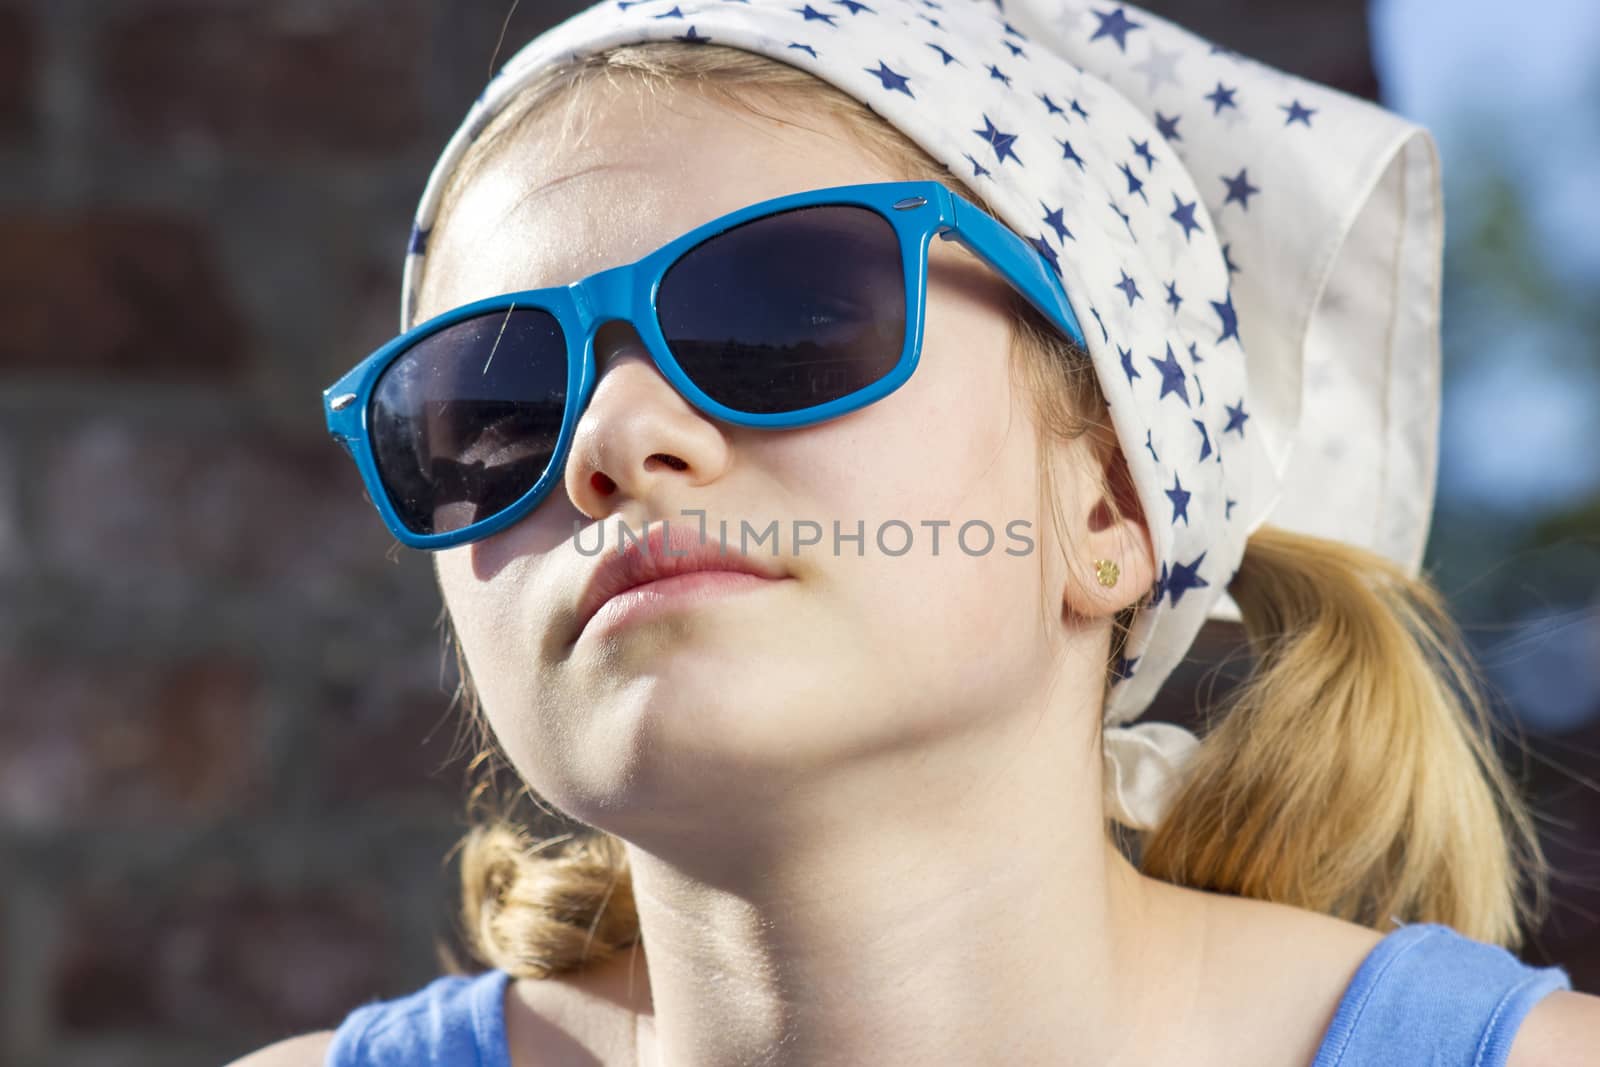 portrait of a cute little girl wearing sunglasses